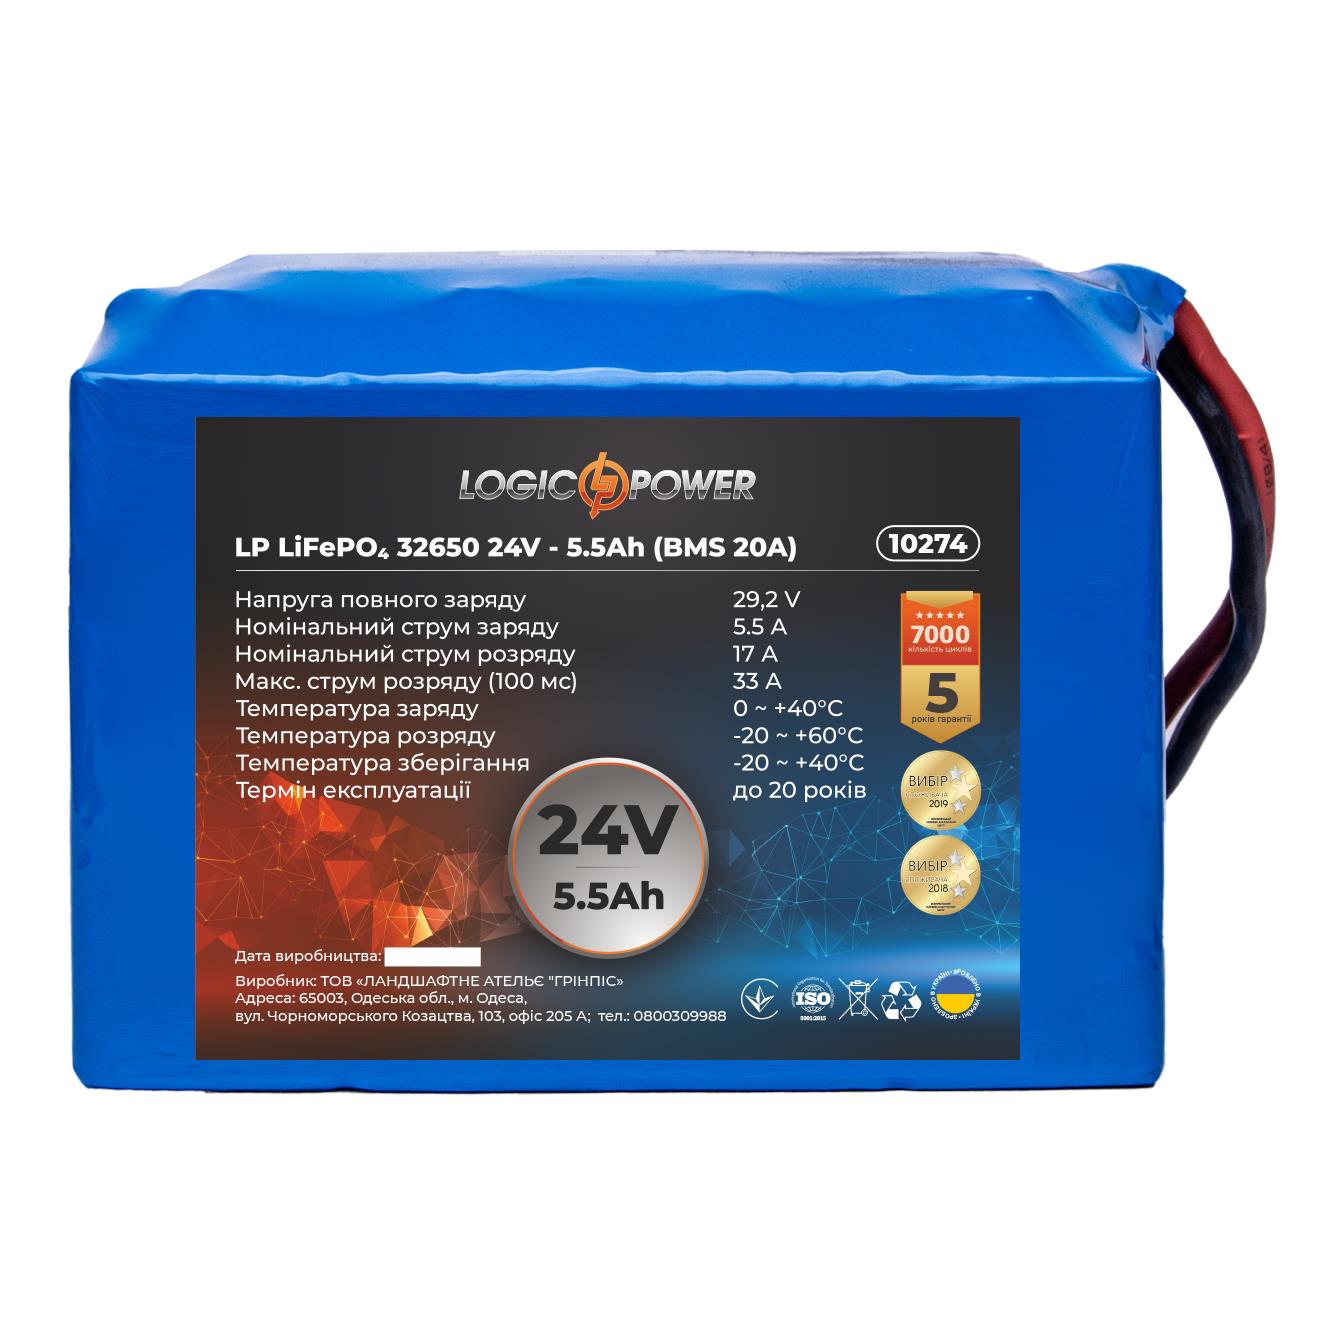 Акумулятор літій-залізо-фосфатний LogicPower LP LiFePO4 32650 24V - 5.5 Ah (BMS 20A) (10274)